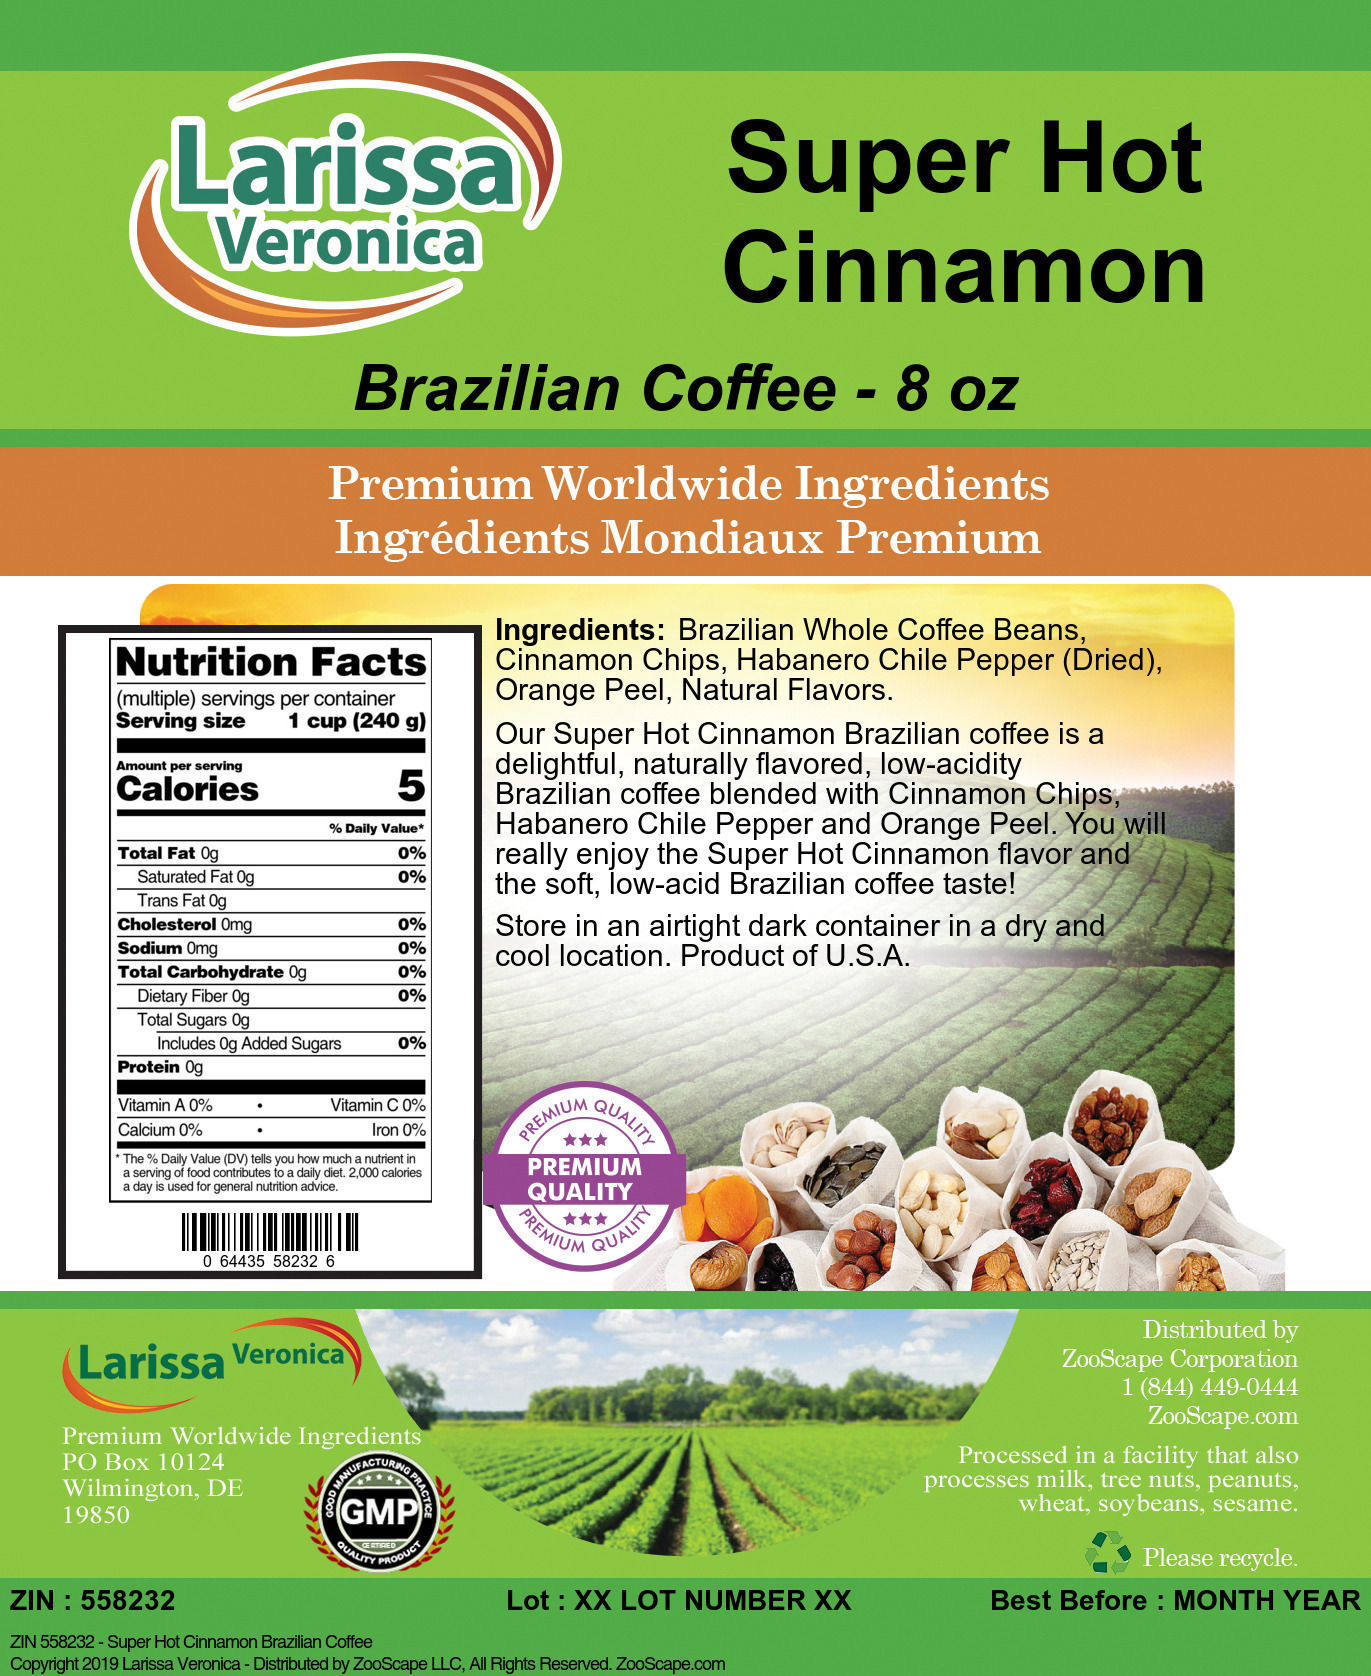 Super Hot Cinnamon Brazilian Coffee - Label